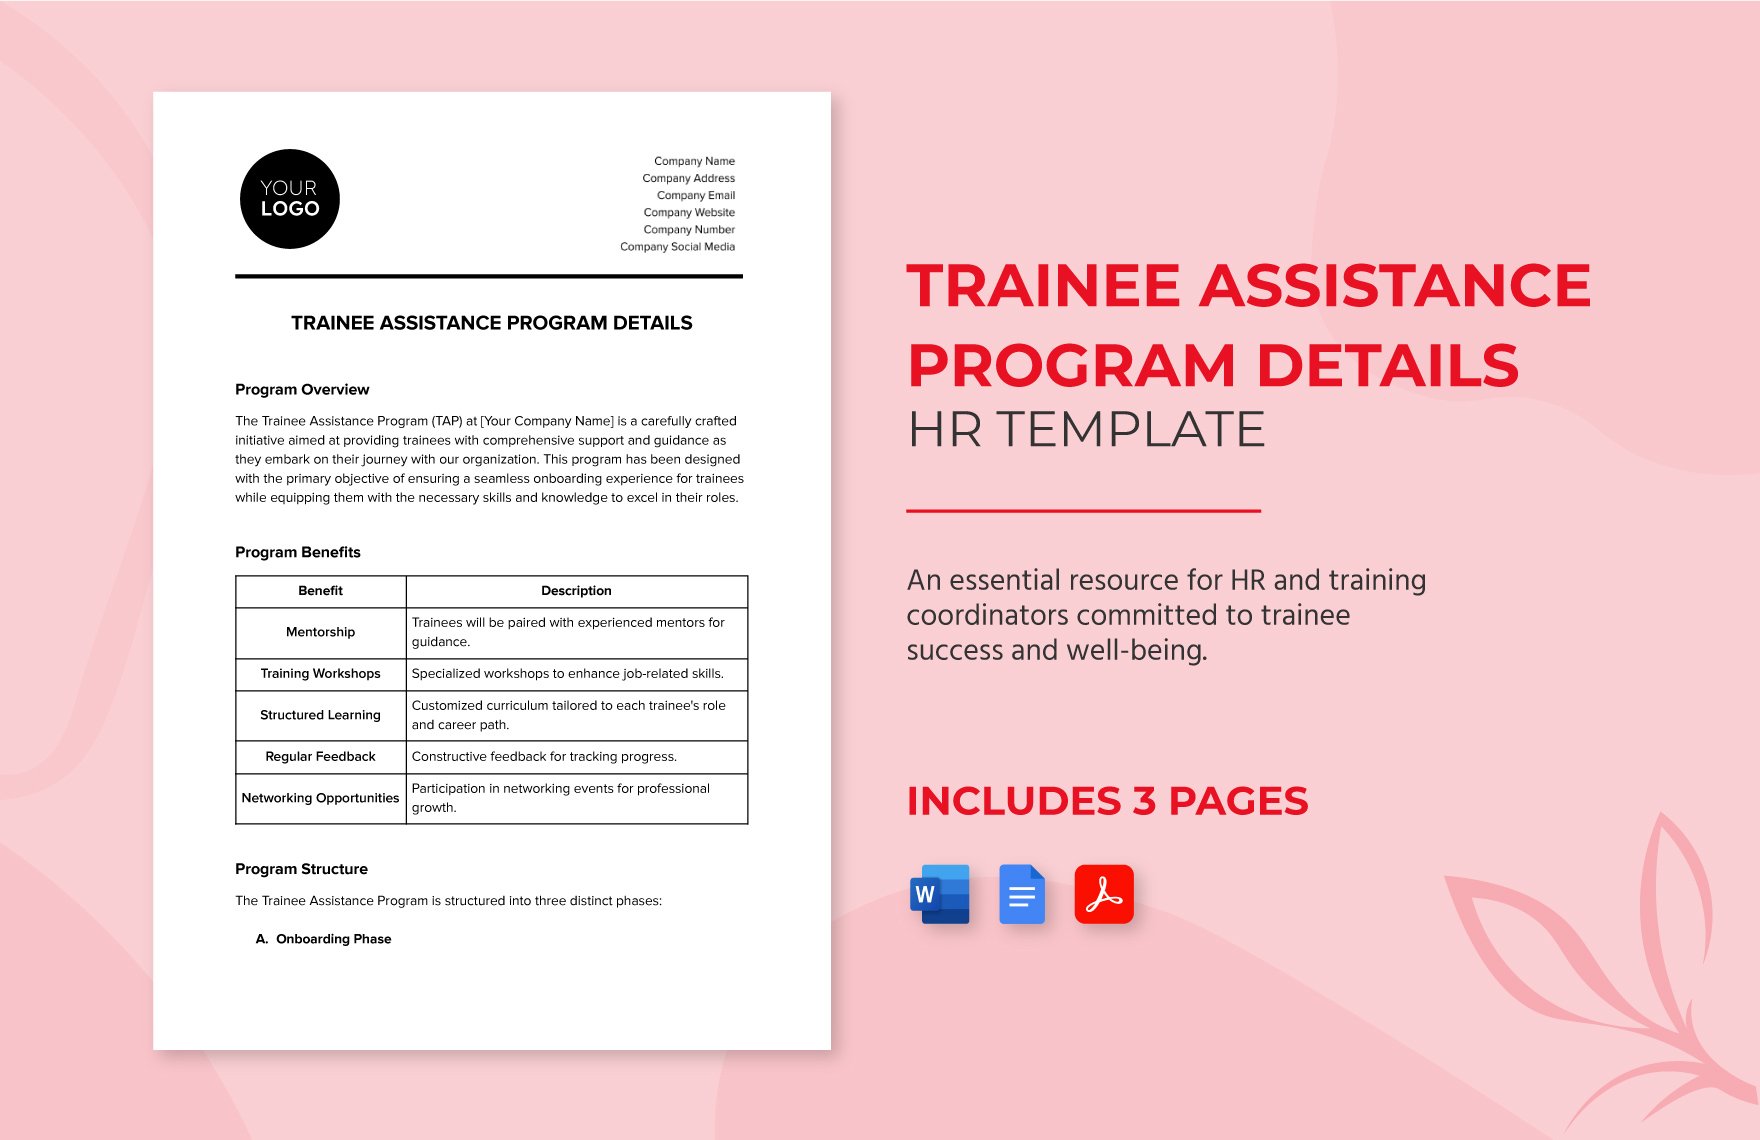 Trainee Assistance Program Details HR Template